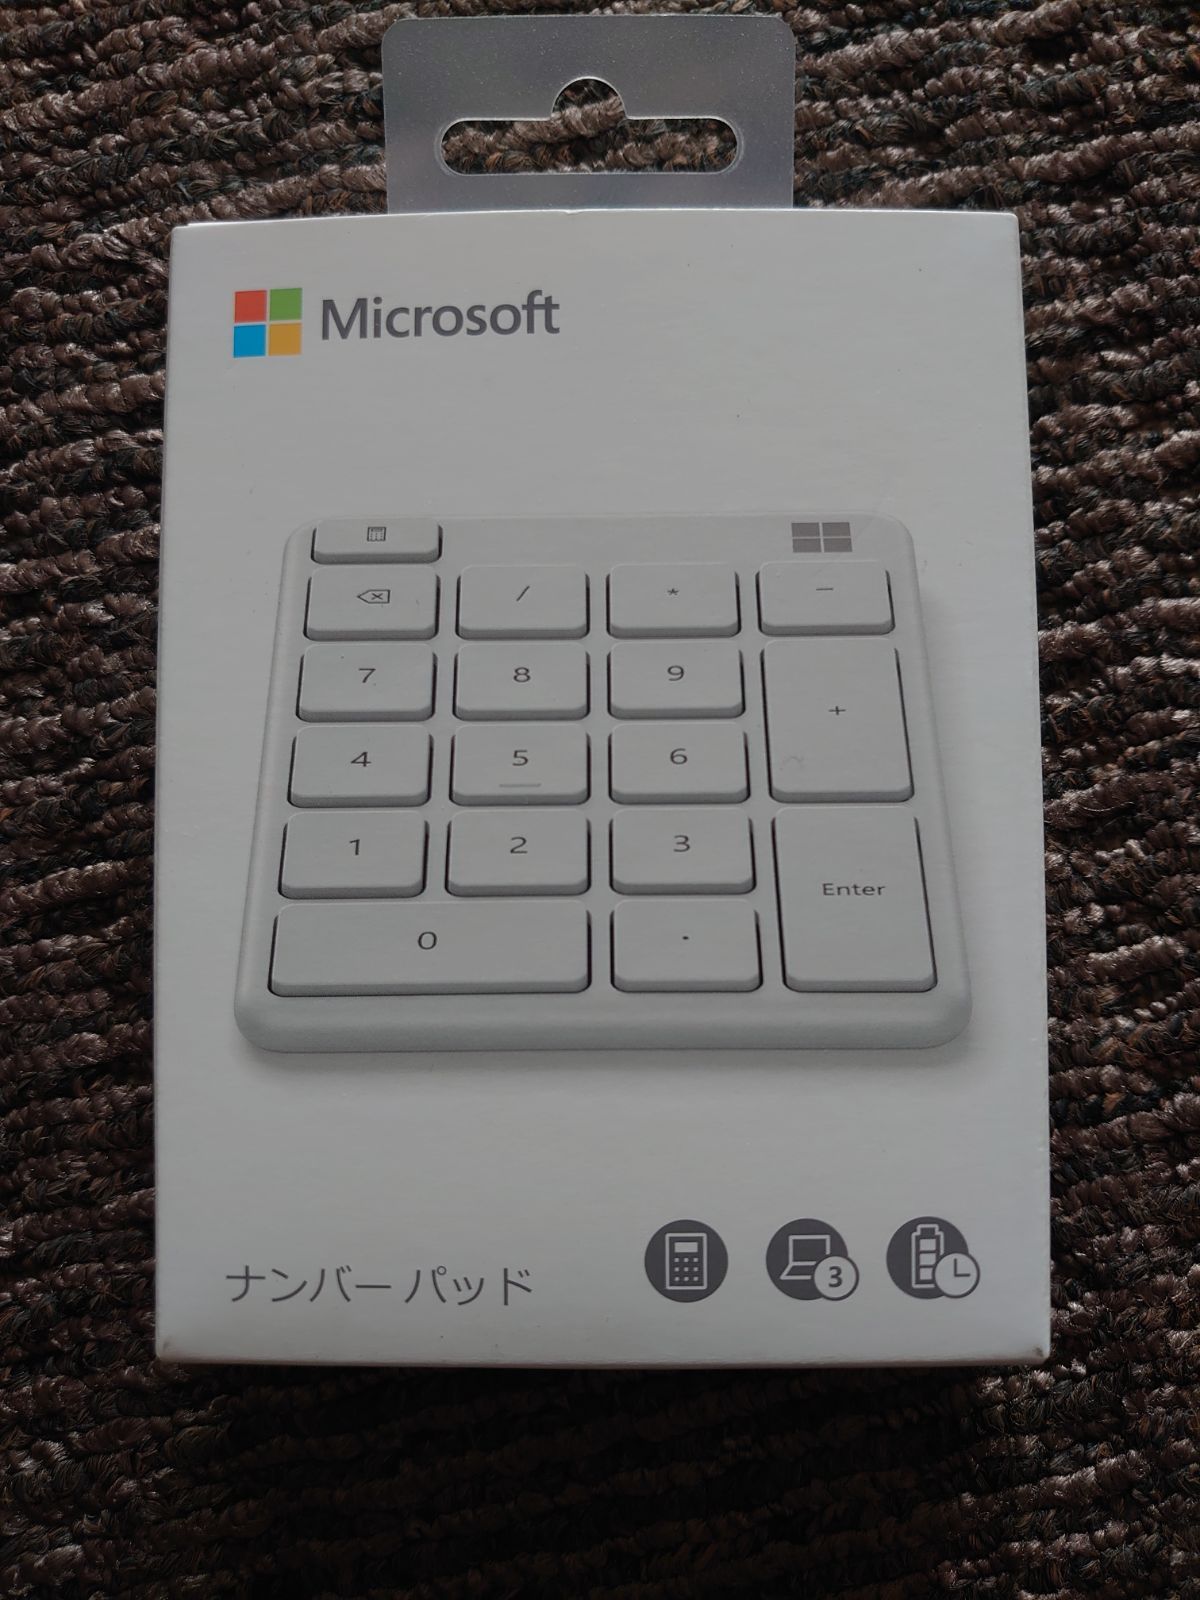 マイクロソフト Microsoft MS ナンバーパッド グレイシア